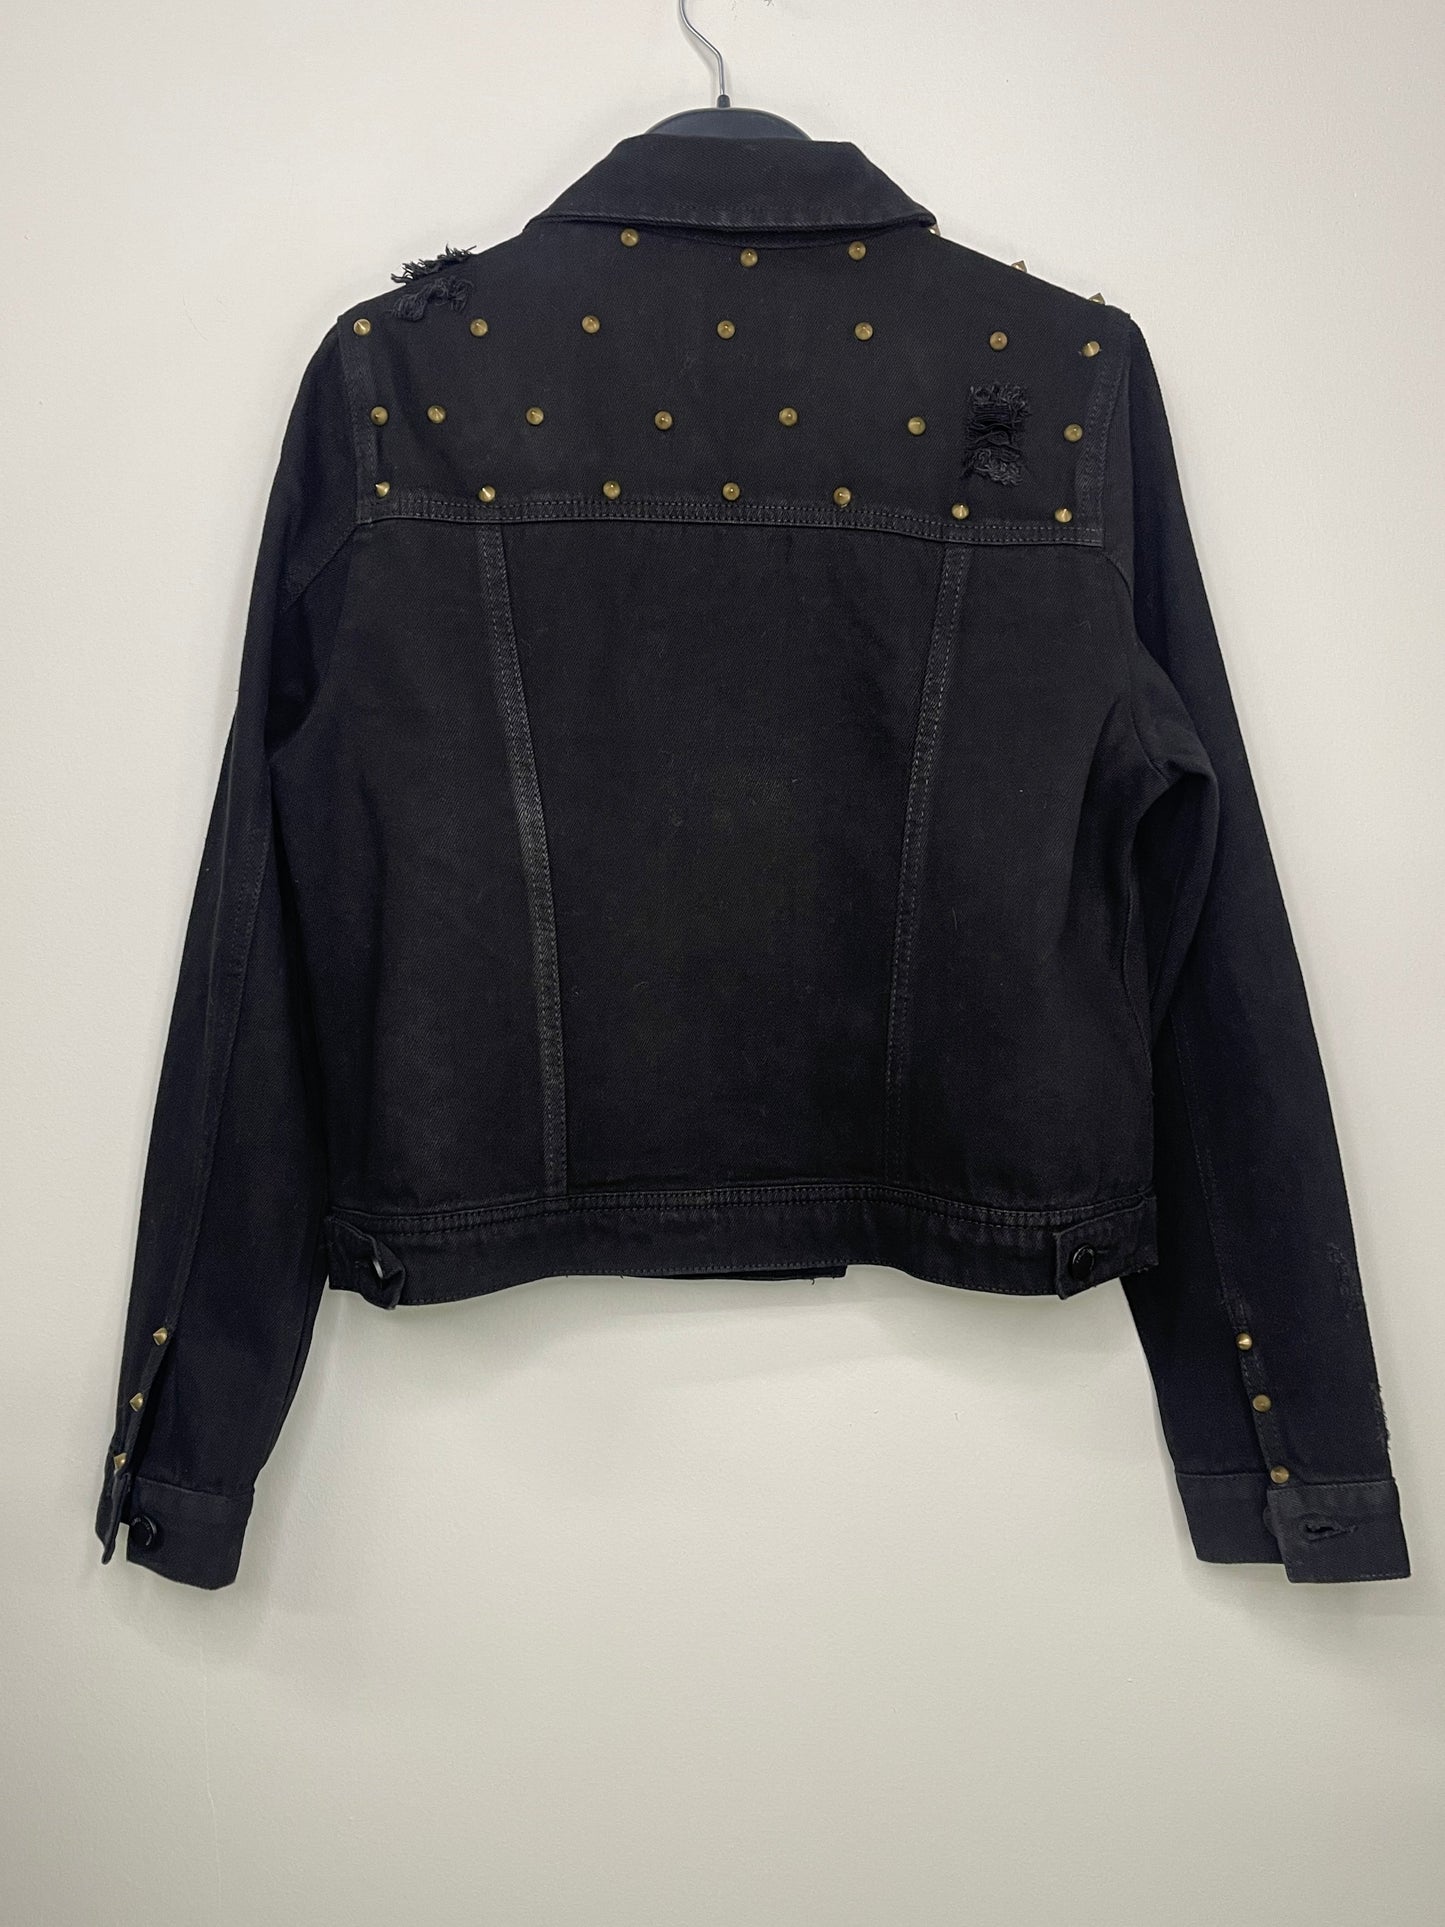 Jacket, Denim Black, Gold Stud Shoulders